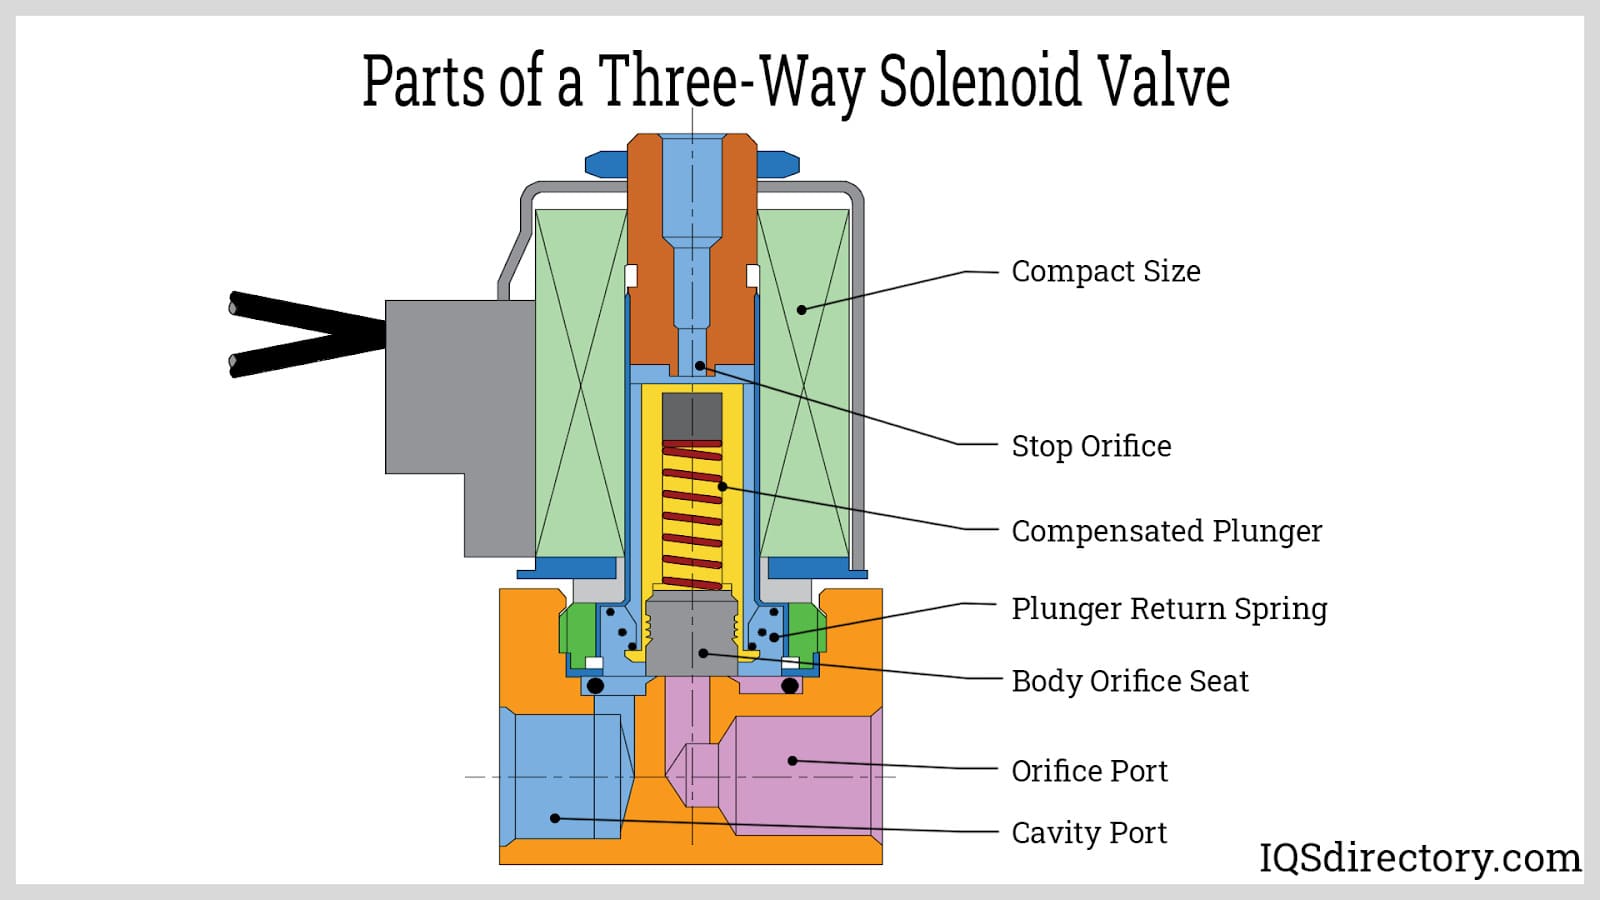 Parts of a Three-Way Solenoid Valve